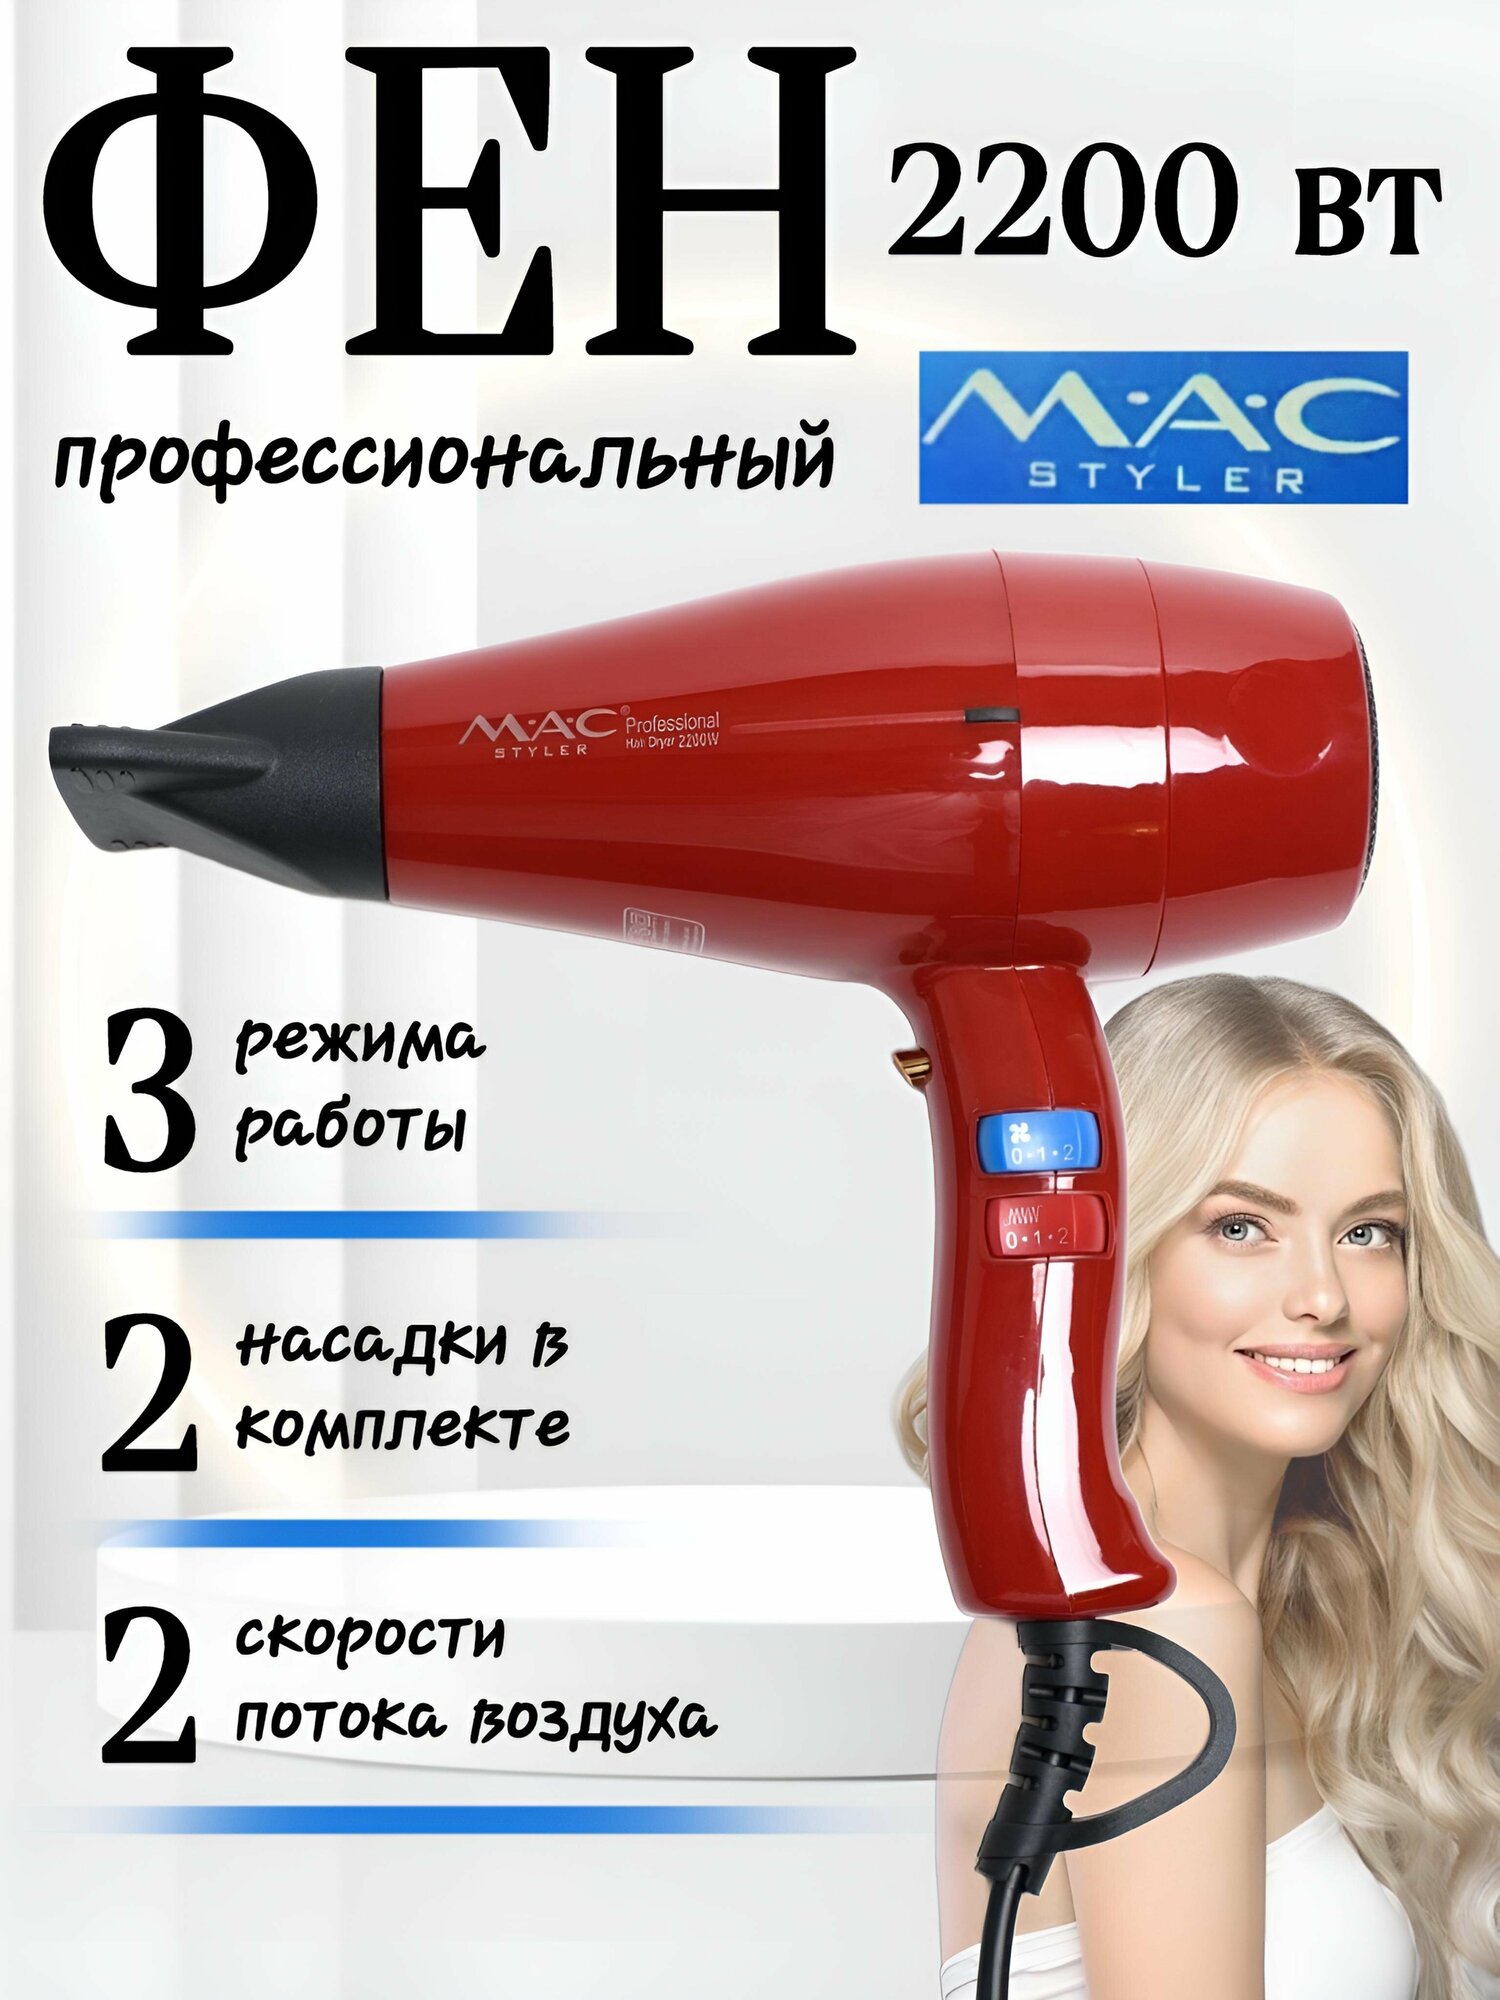 Фен для волос профессиональный мощный с ионизацией M.A.C MC-808 2200 Вт, фен с насадками для укладки и сушки волос, красный